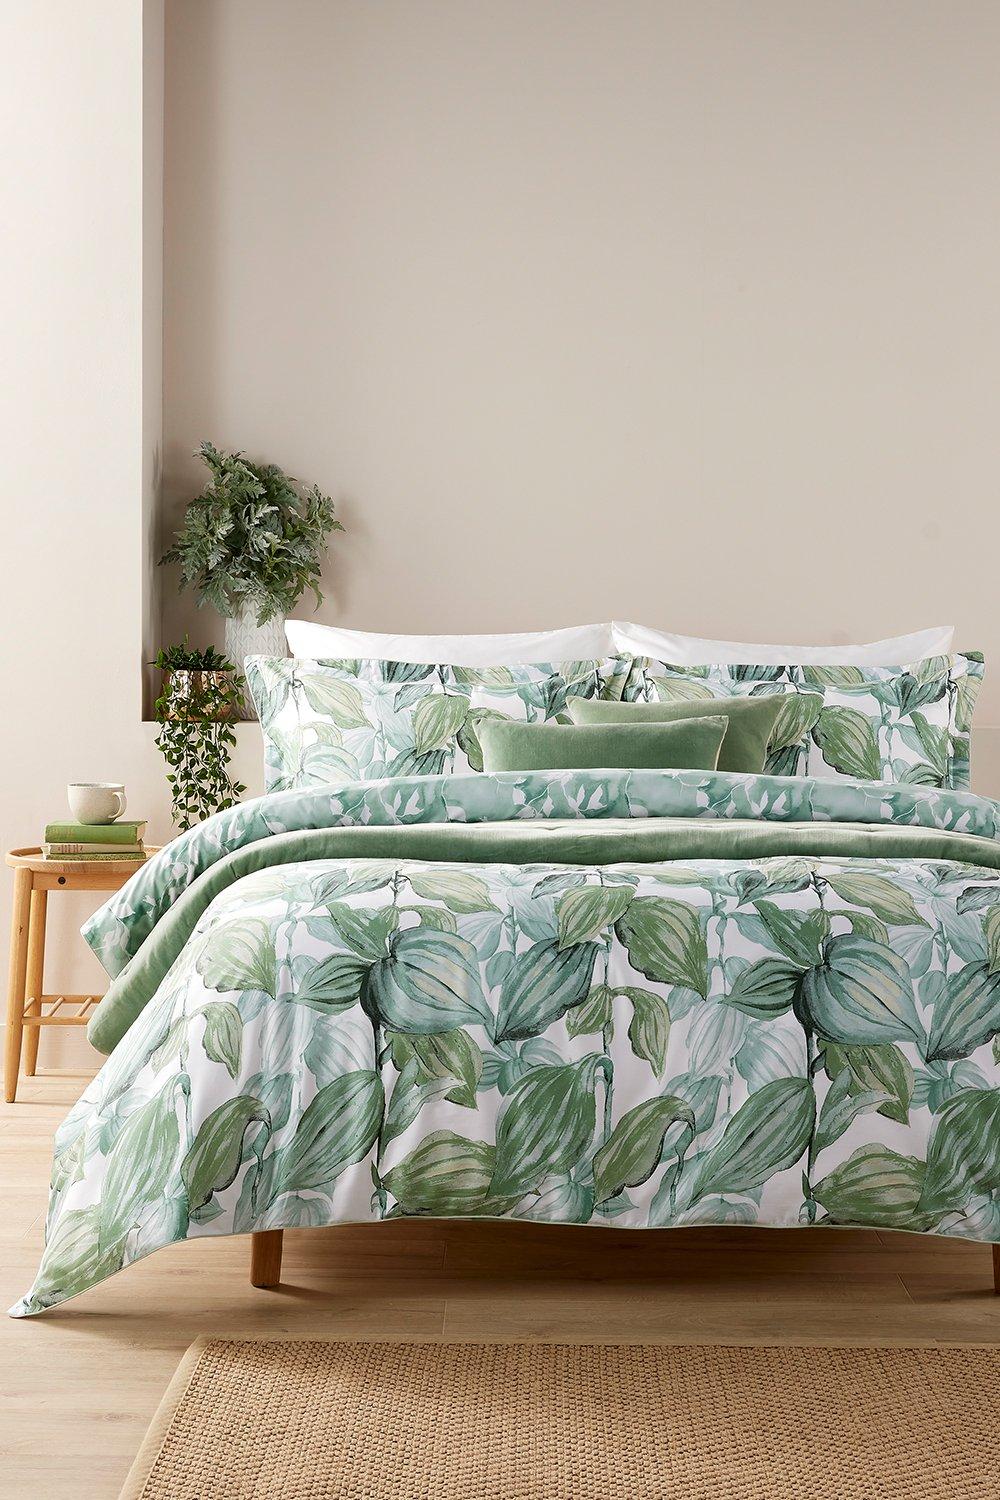 'Hartley' Cotton Sateen Tropical Plants Floral Print Duvet Cover Sets